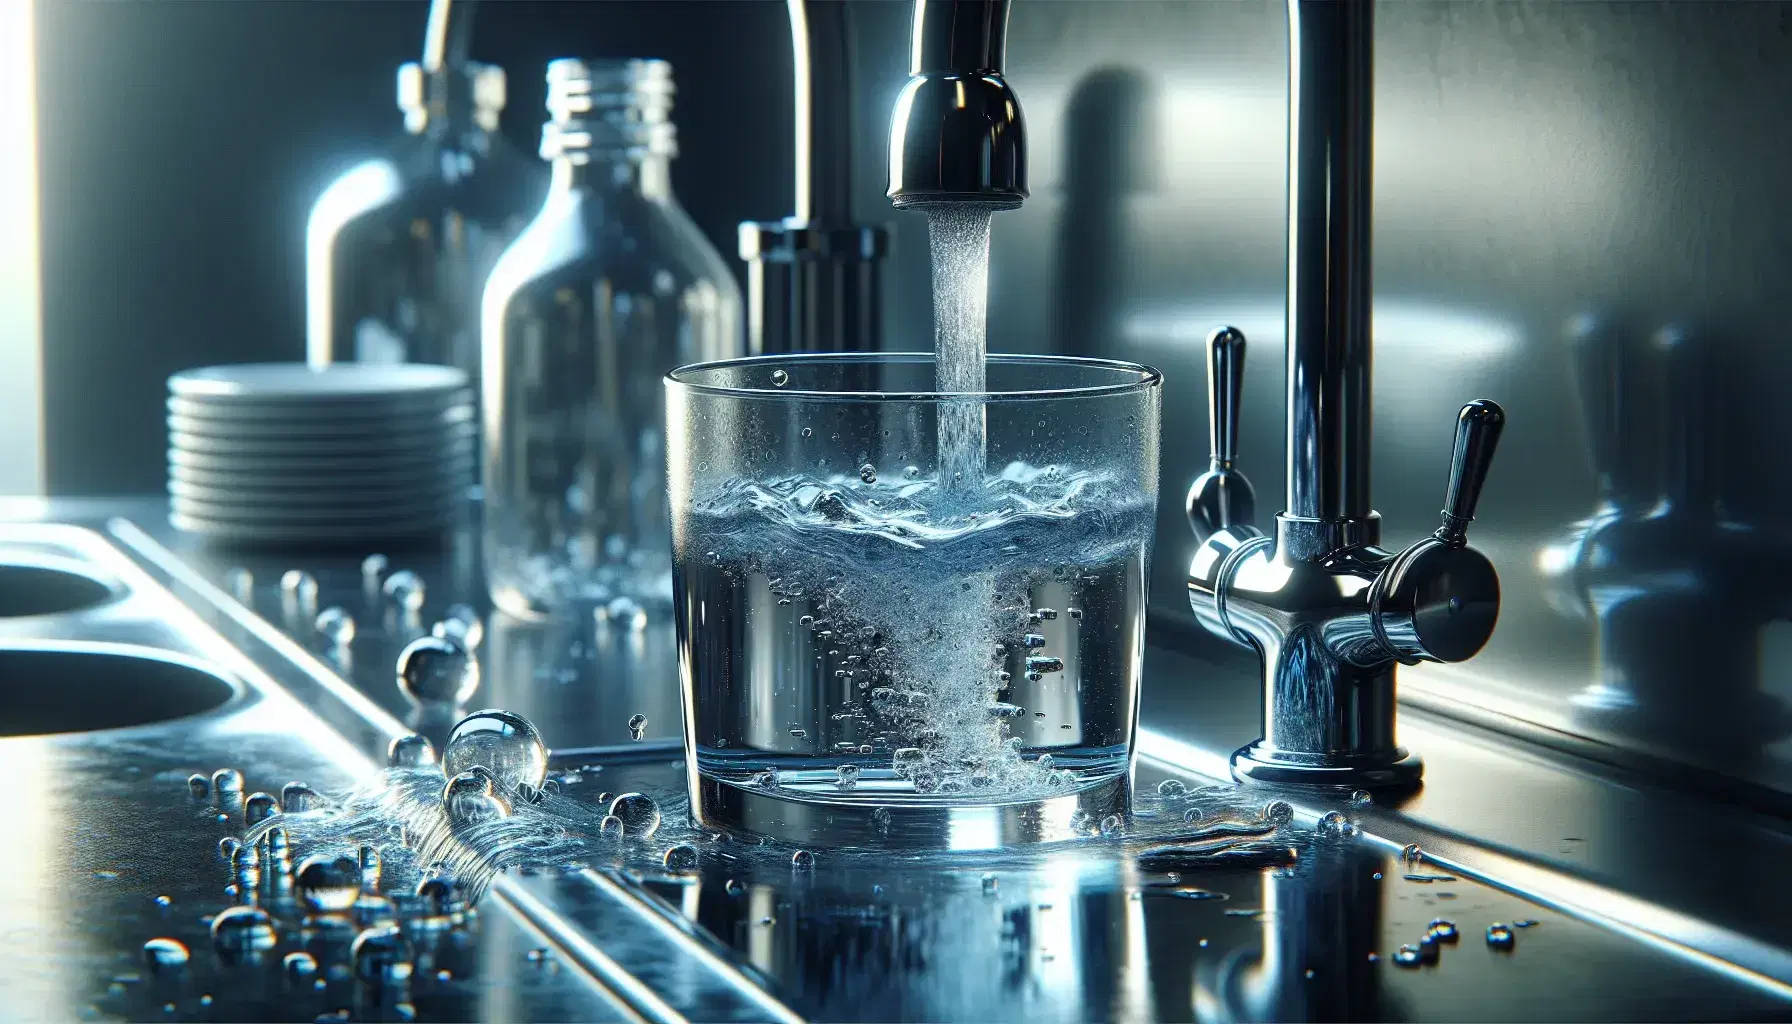 Grifo de metal cromado vertiendo agua cristalina en vaso transparente sobre superficie reflectante con fondo desenfocado de cocina.